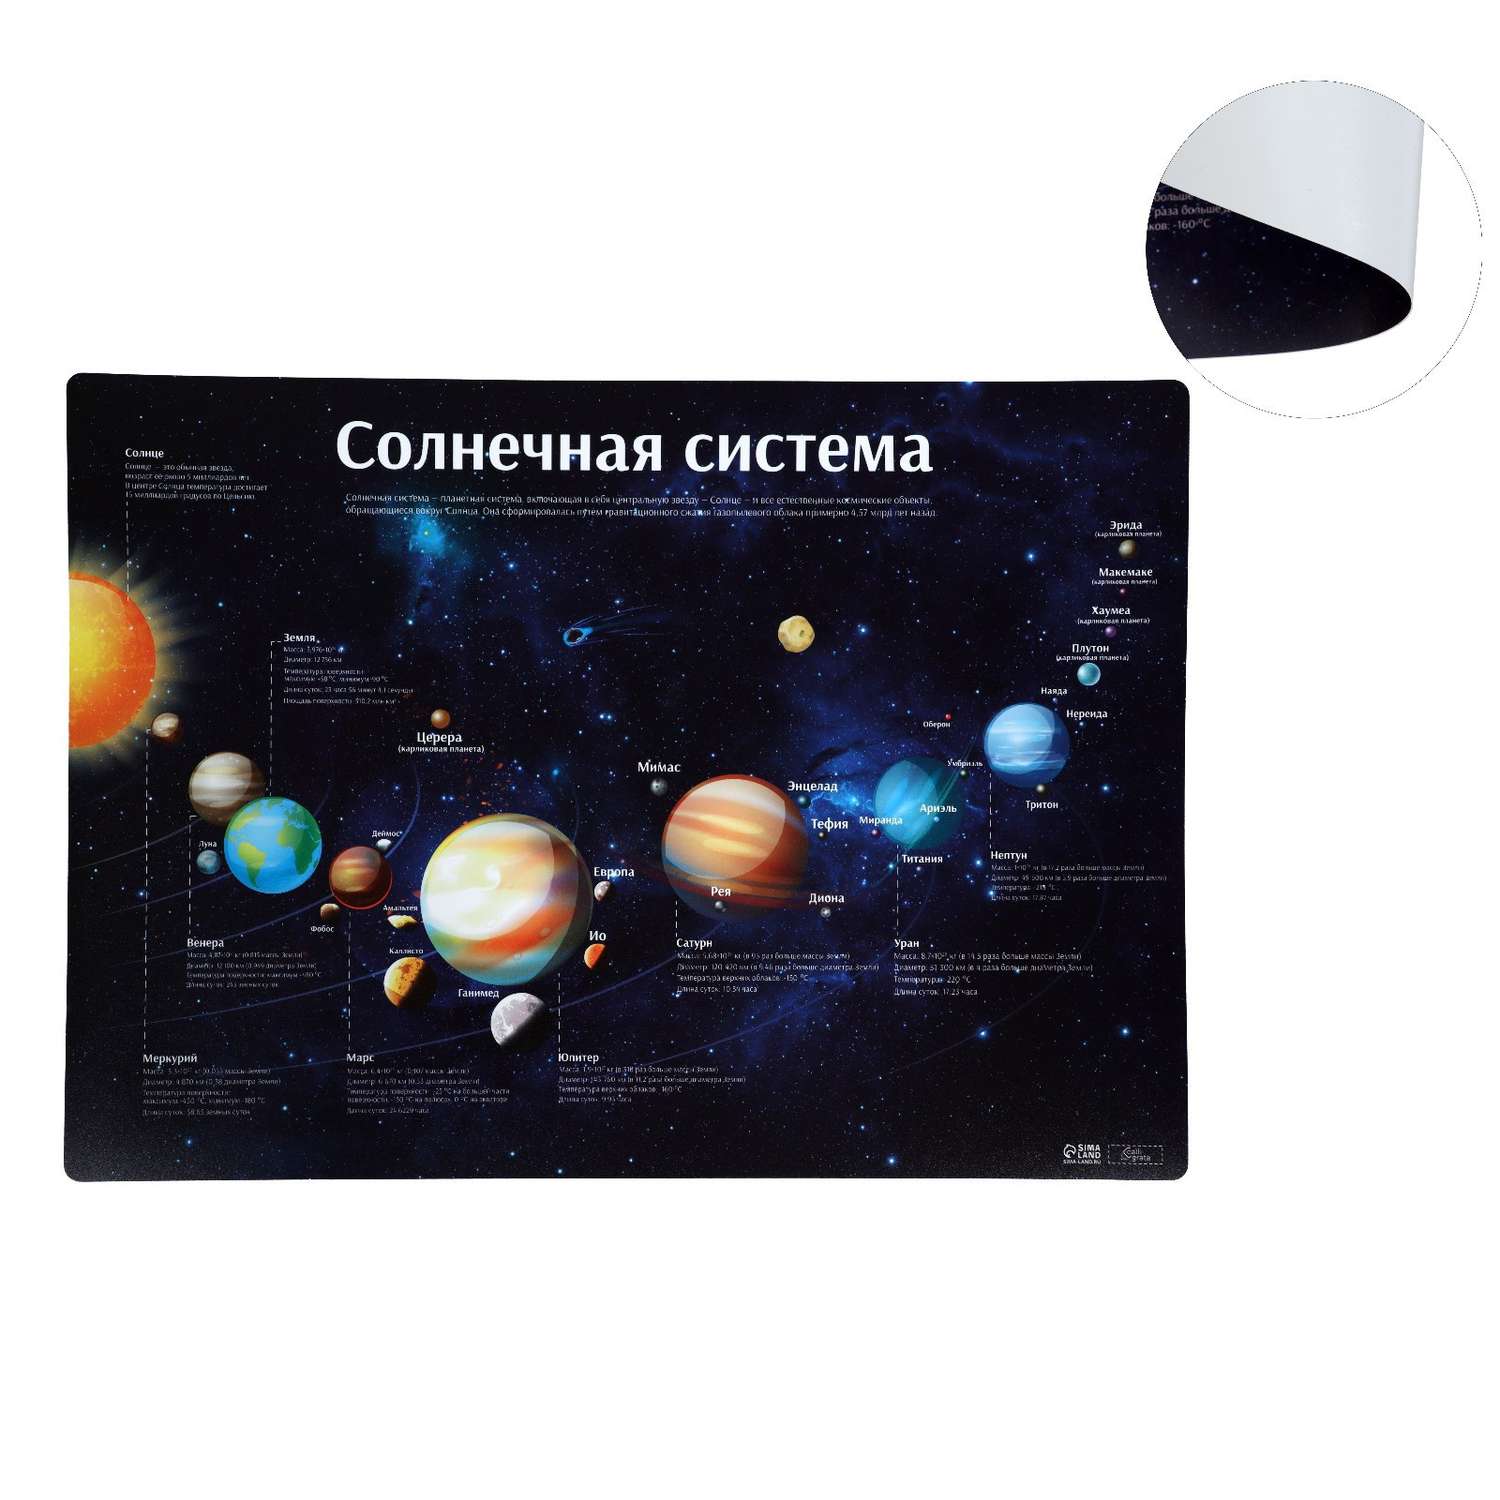 Накладка на стол Calligrata пластиковая А3 460 х 330 мм «Солнечная система» 430 мкм обучающая - фото 2